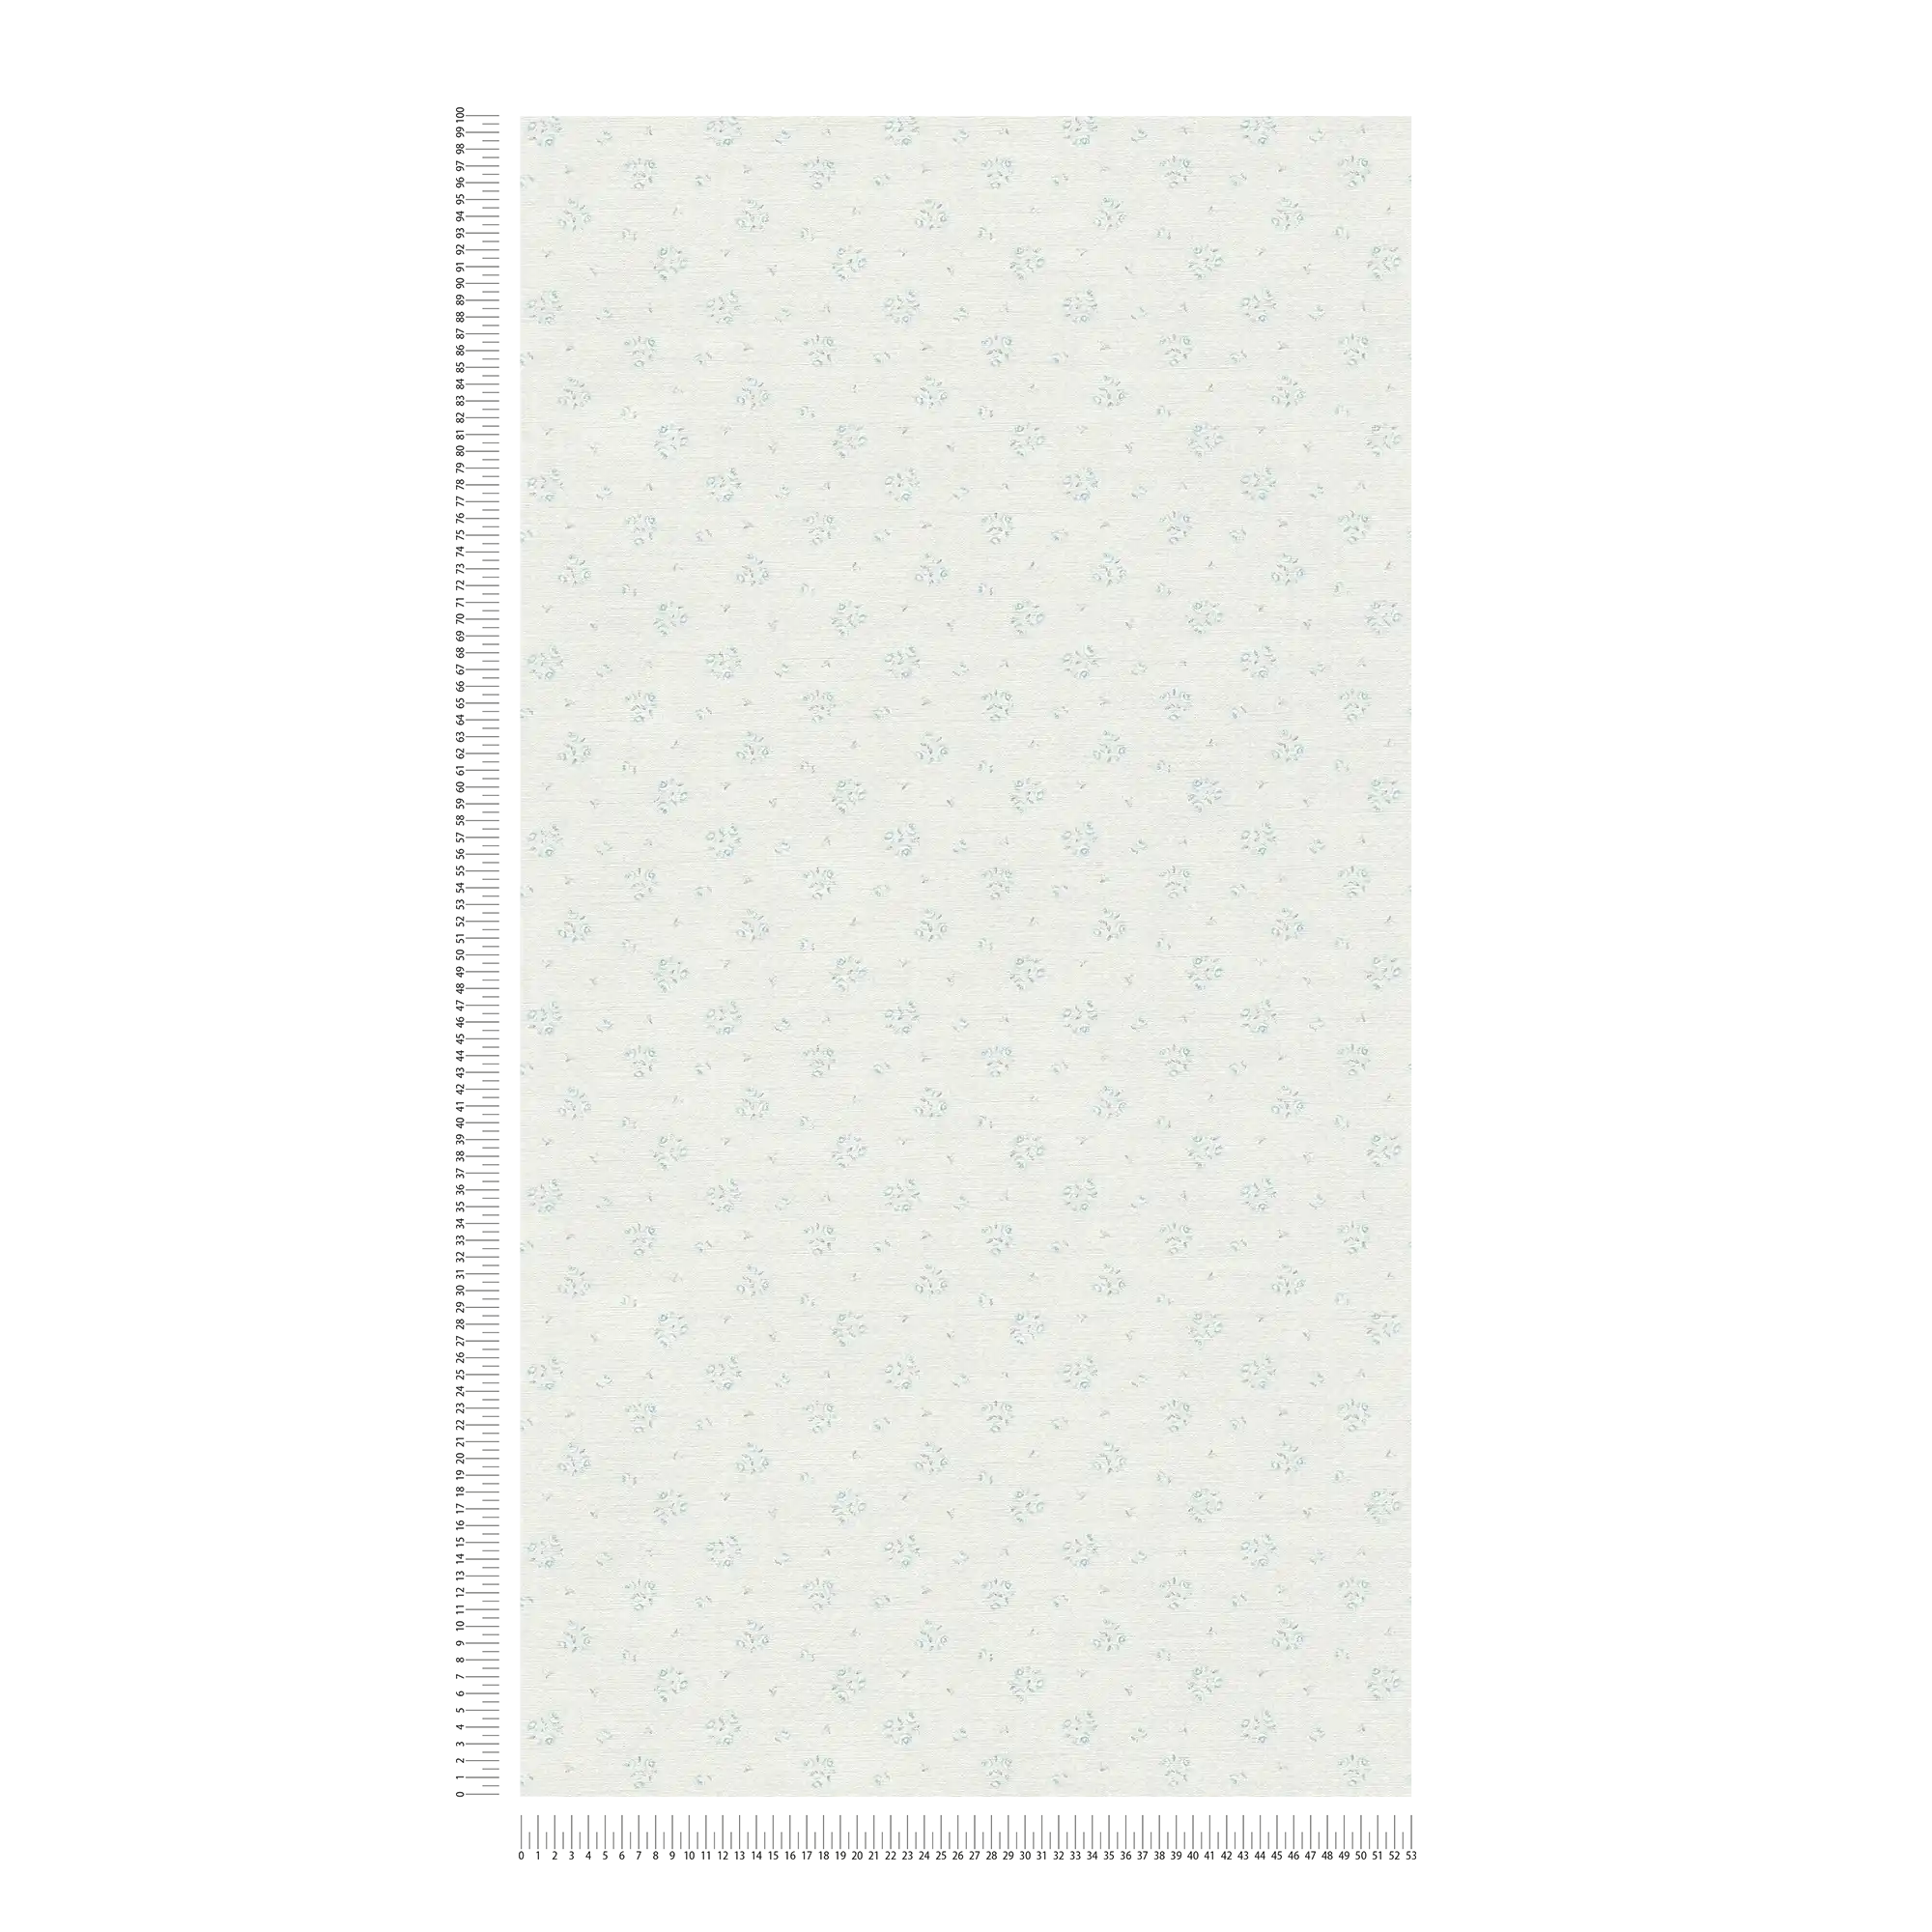             Landhaus Tapete mit floralem Muster im Shabby Chic Stil – Hellgrau, Blau, Weiß
        